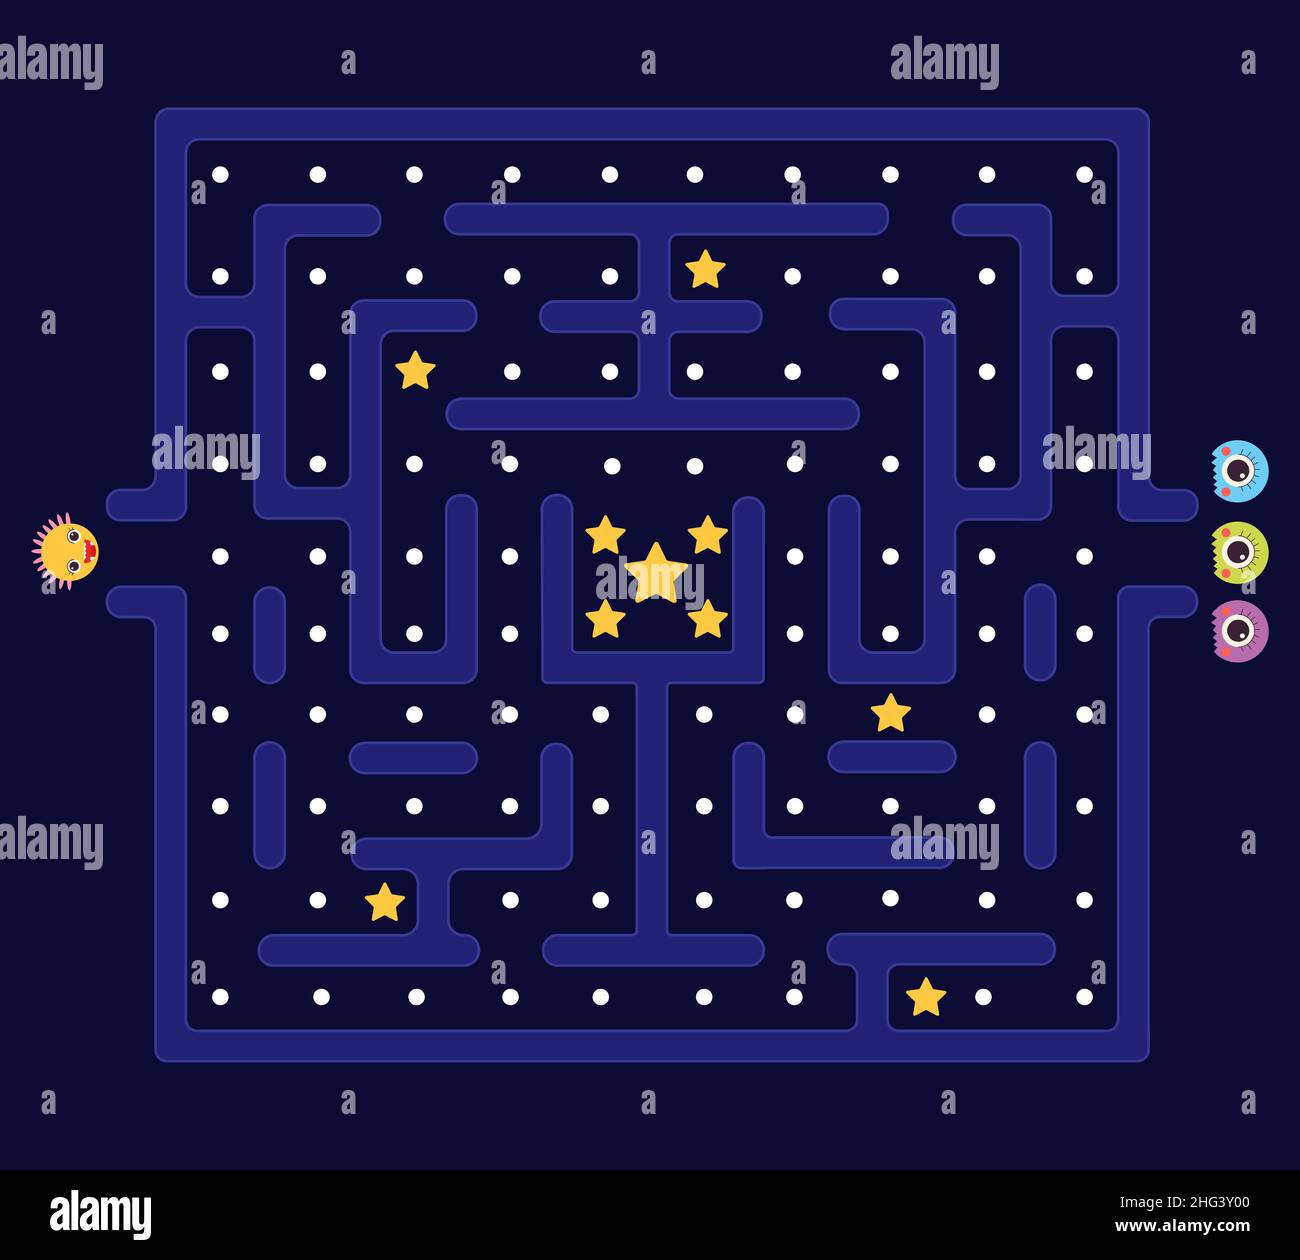 Labirinto Arcade. Pacman sfondo, pac man retro video gioco per computer. Difensore labirintico e mostri. L'app per bambini gioca in stile 80s, livello di videogioco decente Illustrazione Vettoriale